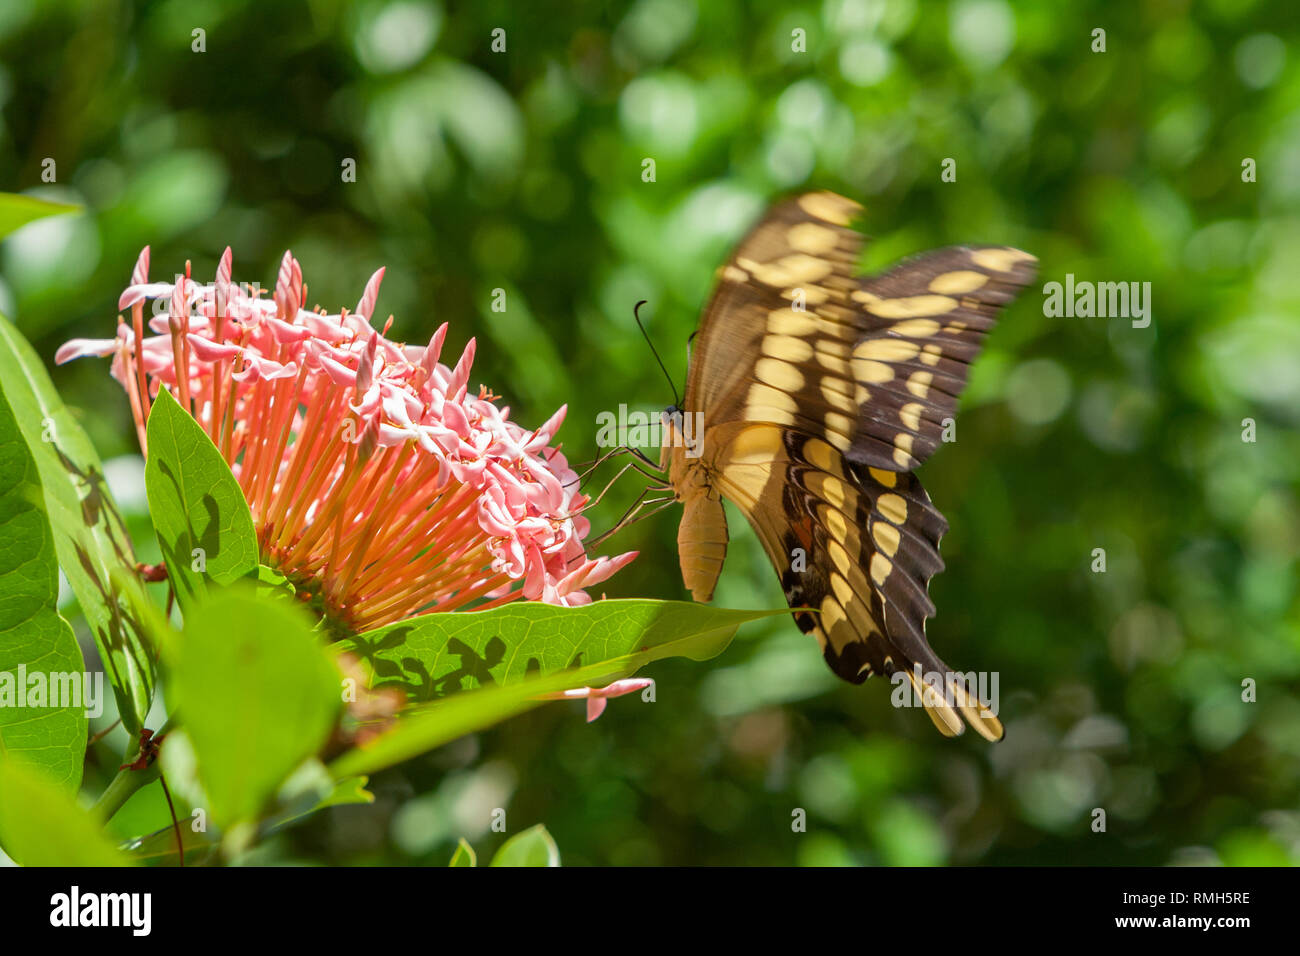 King Swallowtail (Heraclides thoas, Papilio thoas), aka Thoas Swallowtail butterfly, underside view, pollinating a pink flower (Ixora sp.), Paraguay Stock Photo